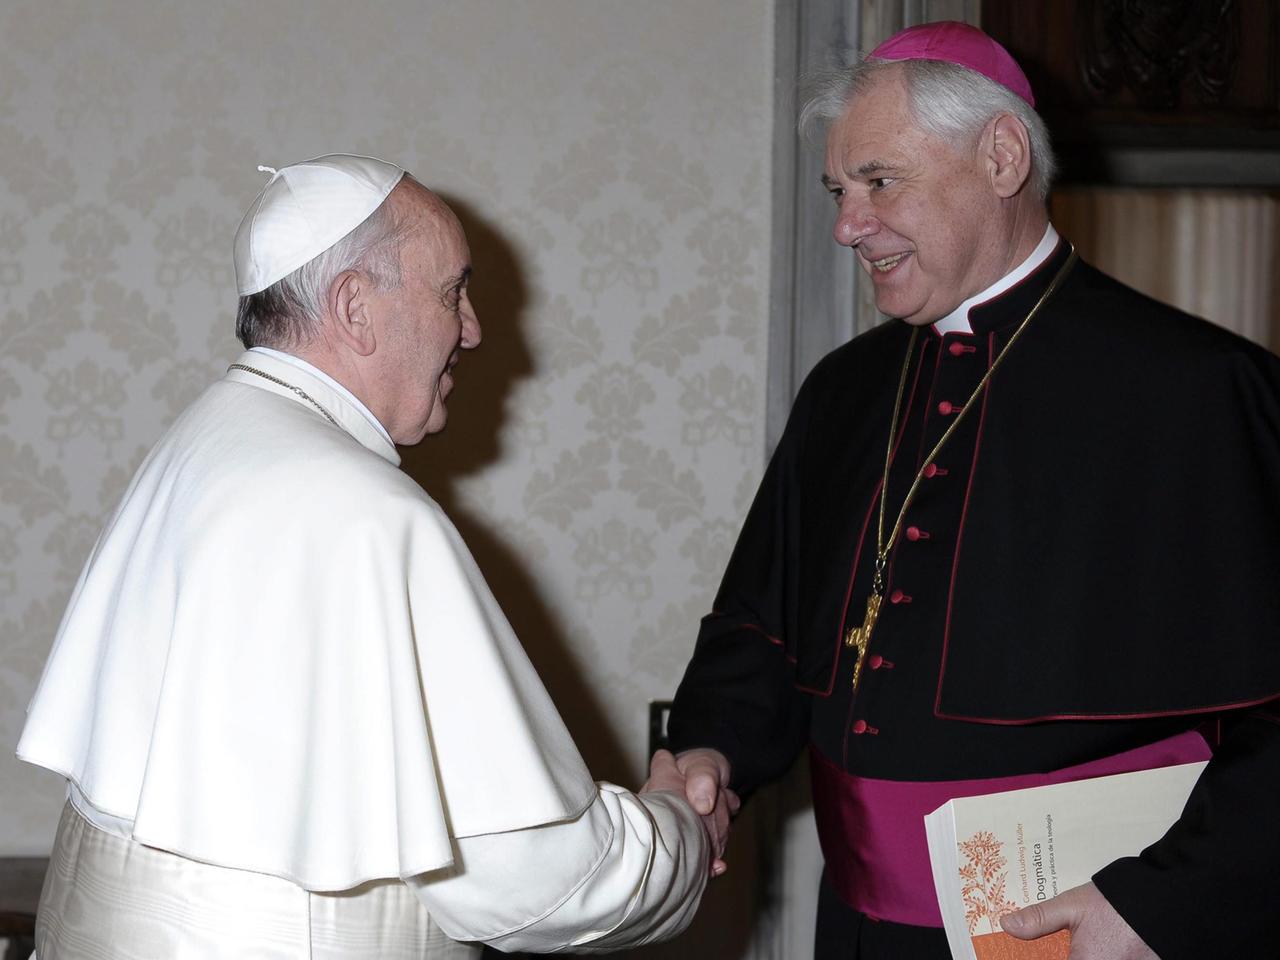 Papst Franziskus, ganz in weiß gekleidet, schüttelt dem Präfekten der Glaubenskongregation, Gerhard Ludwig Müller, die Hand.